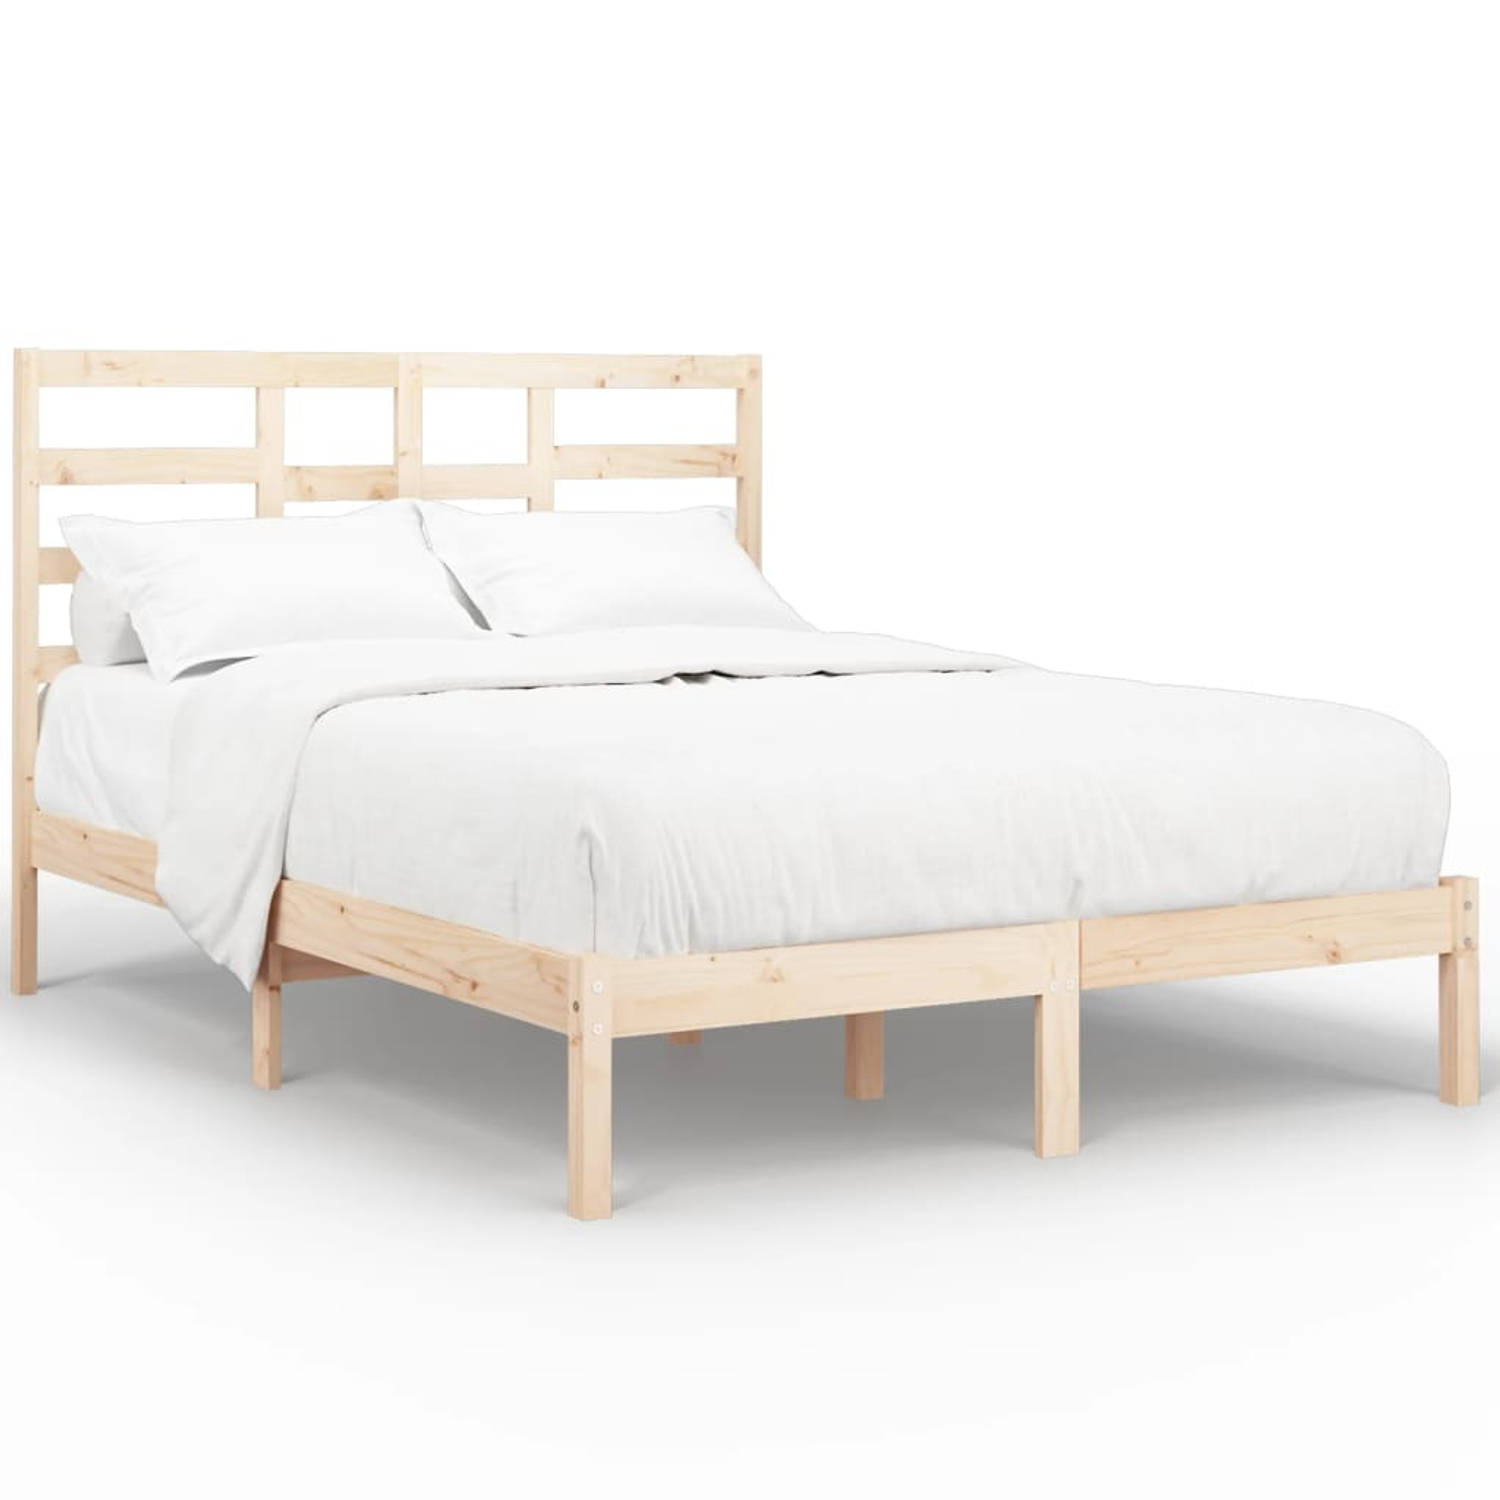 The Living Store Bedframe massief hout 120x200 cm - Bedframe - Bedframes - Bed - Bedbodem - Ledikant - Bed Frame - Massief Houten Bedframe - Slaapmeubel - Tweepersoonsbed - Bedden